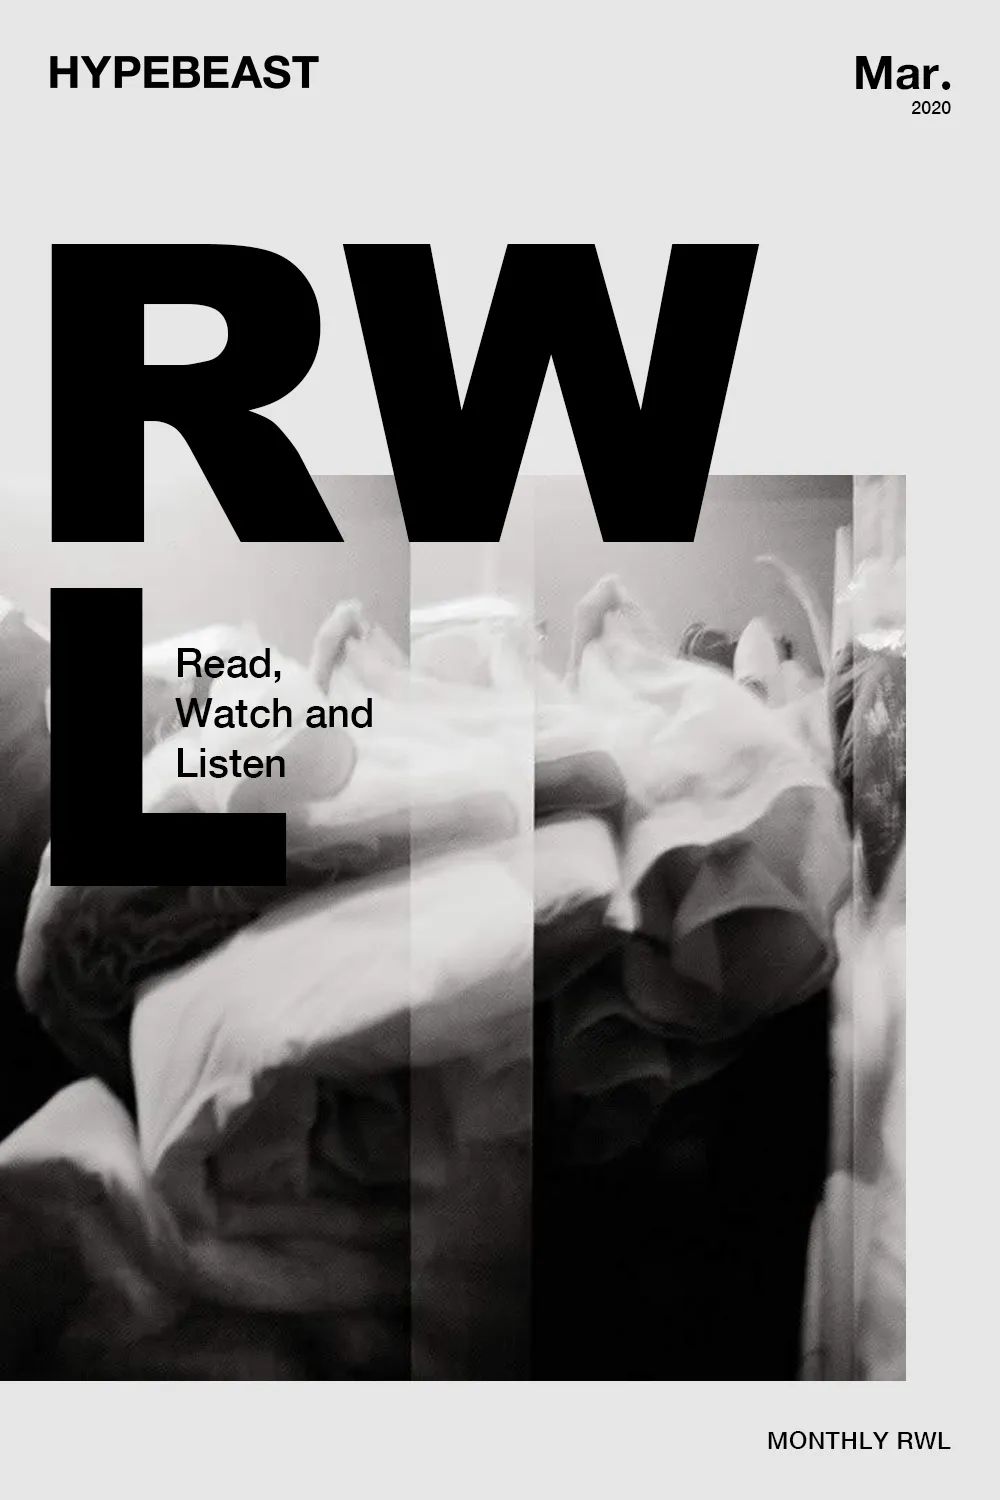 3 月值得留意的书籍 电影和音乐推荐 Monthly Rwl Hypebeast 微信公众号文章阅读 Wemp